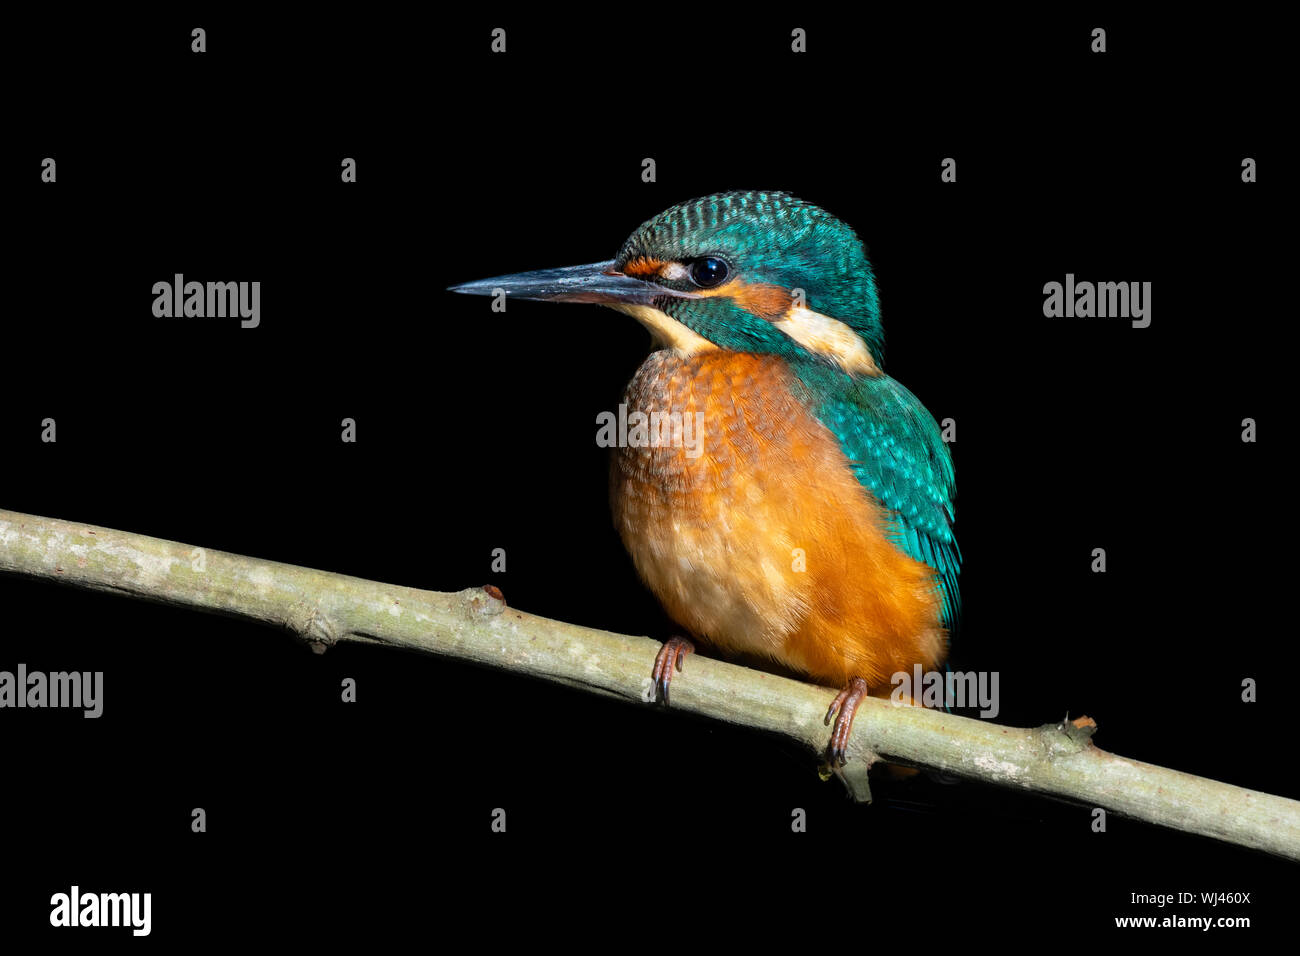 Common Kingfisher (Juvenile Male) - Guarda-rios (juvenil macho) - Alcedo atthis Stock Photo